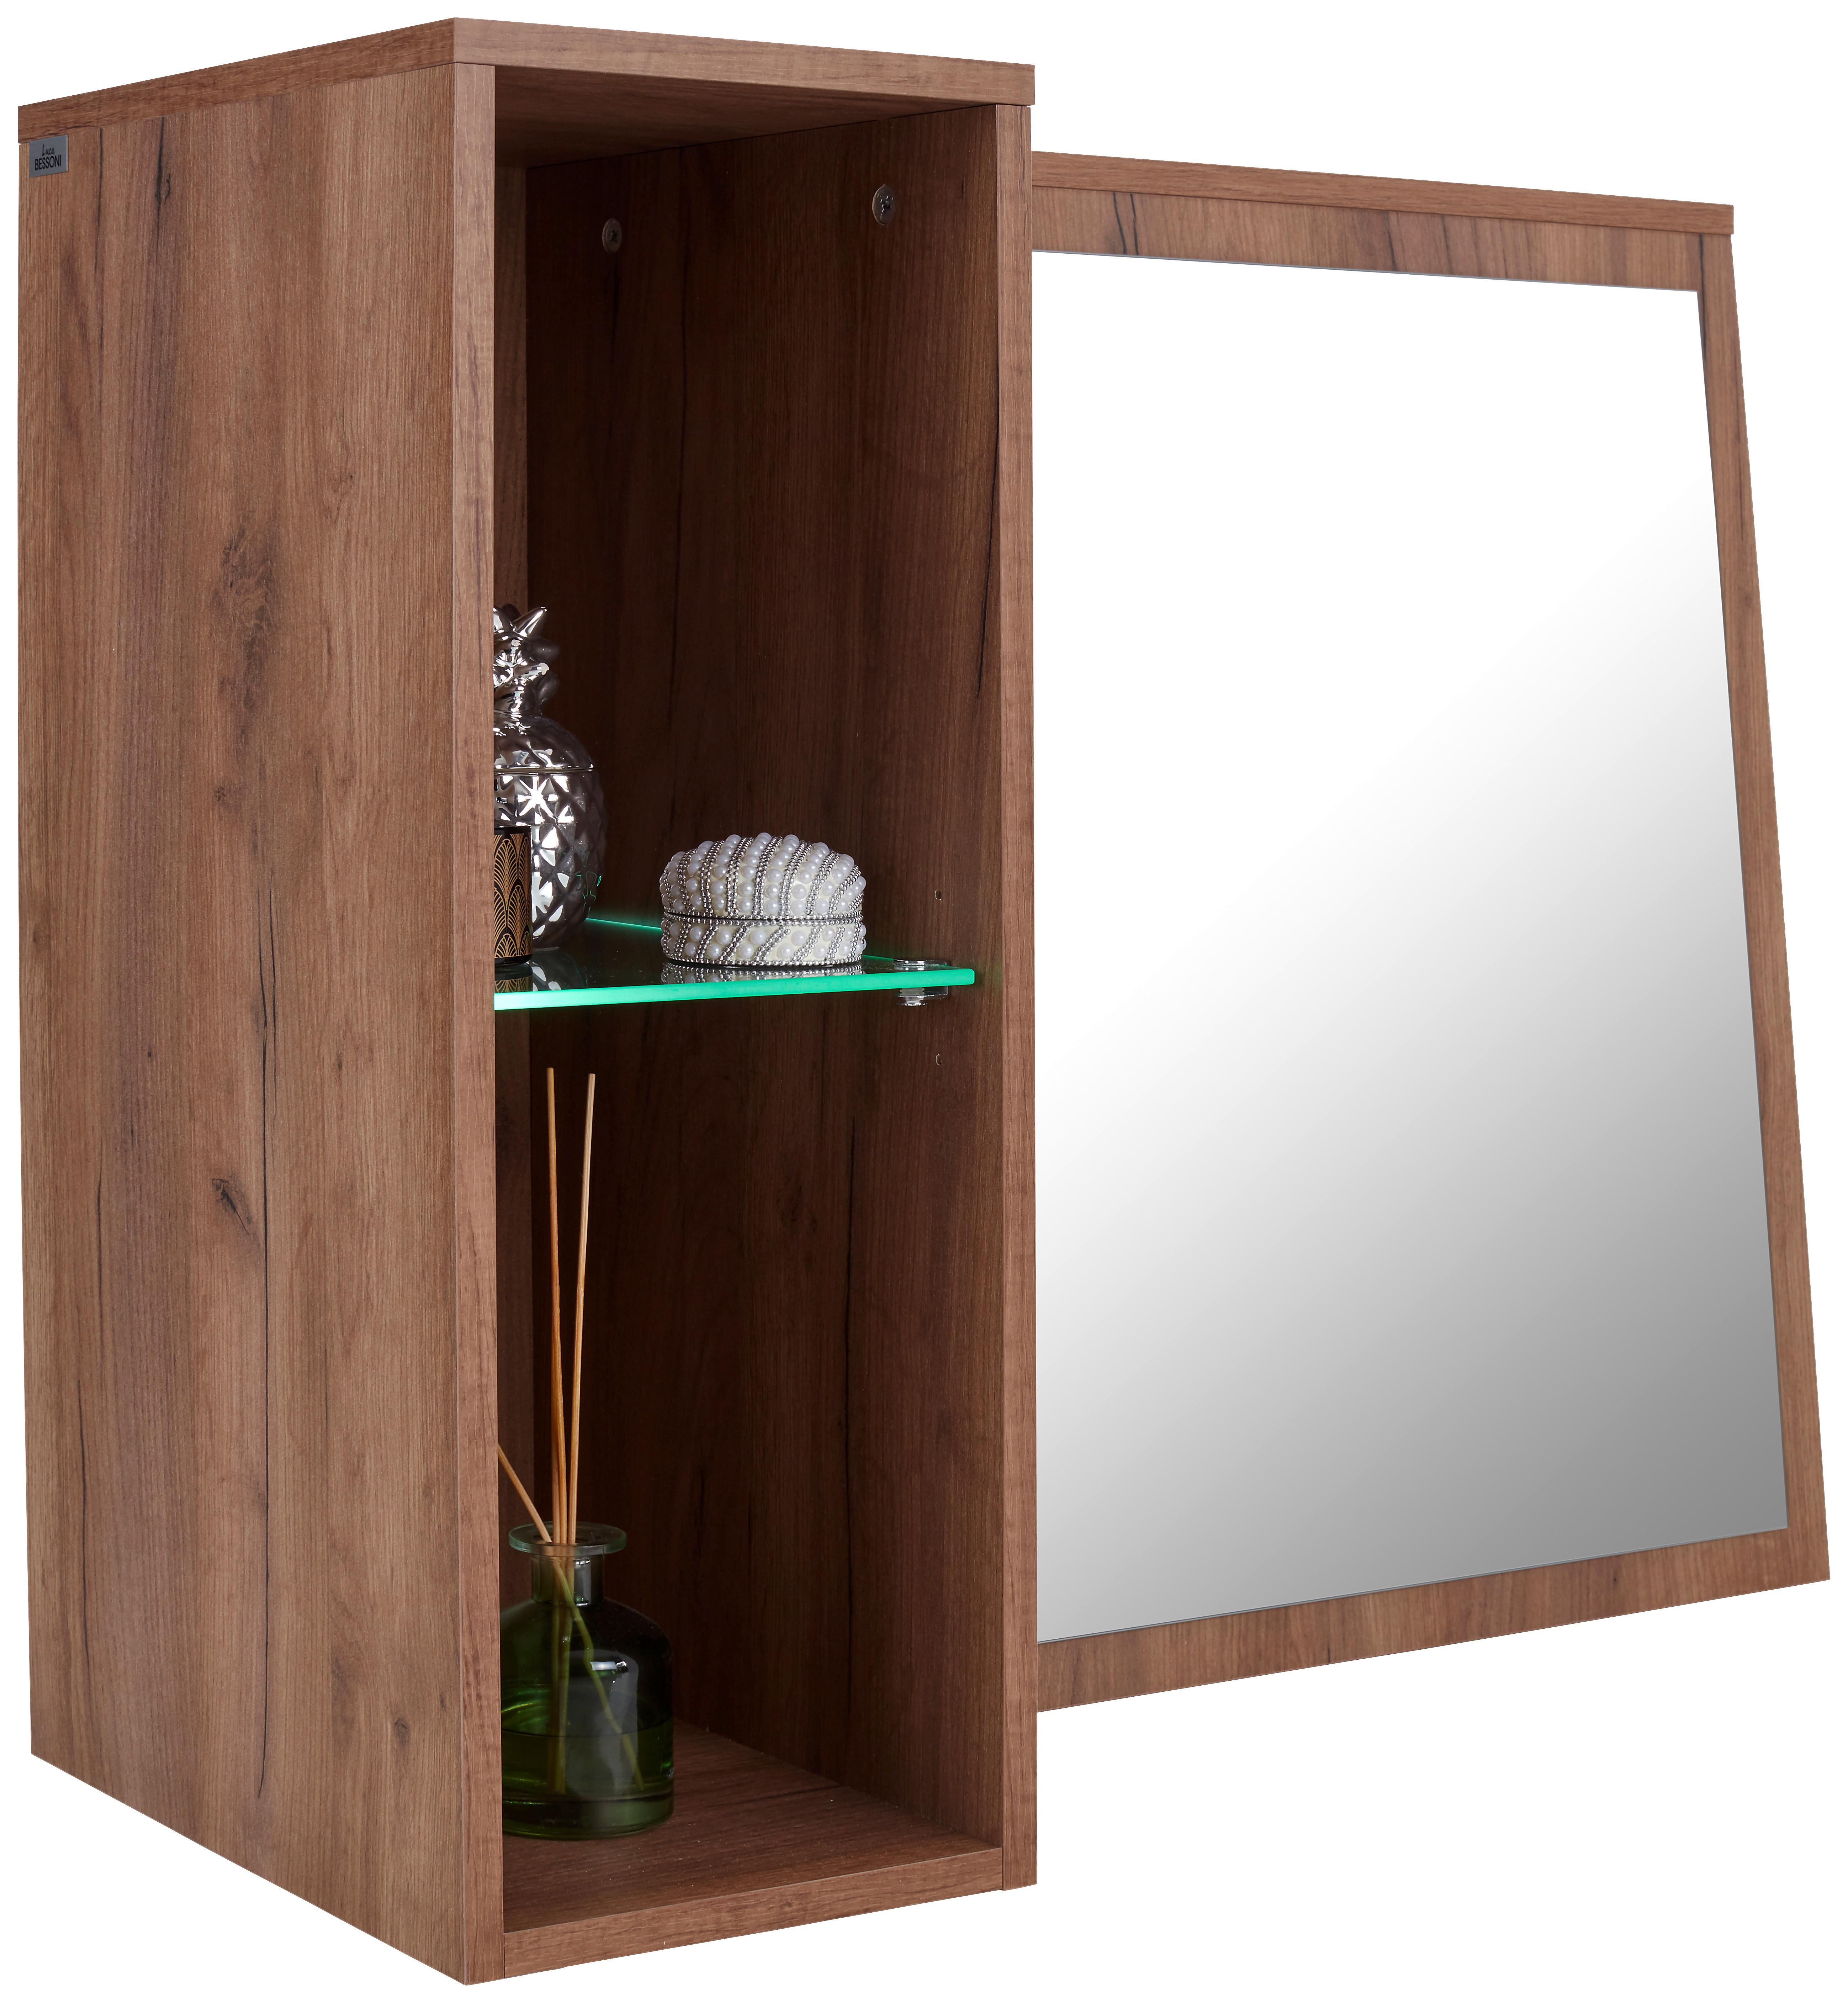 Element Z Ogledalom Avensis New - barve hrasta, Konvencionalno, steklo/leseni material (90/70/25cm) - Modern Living